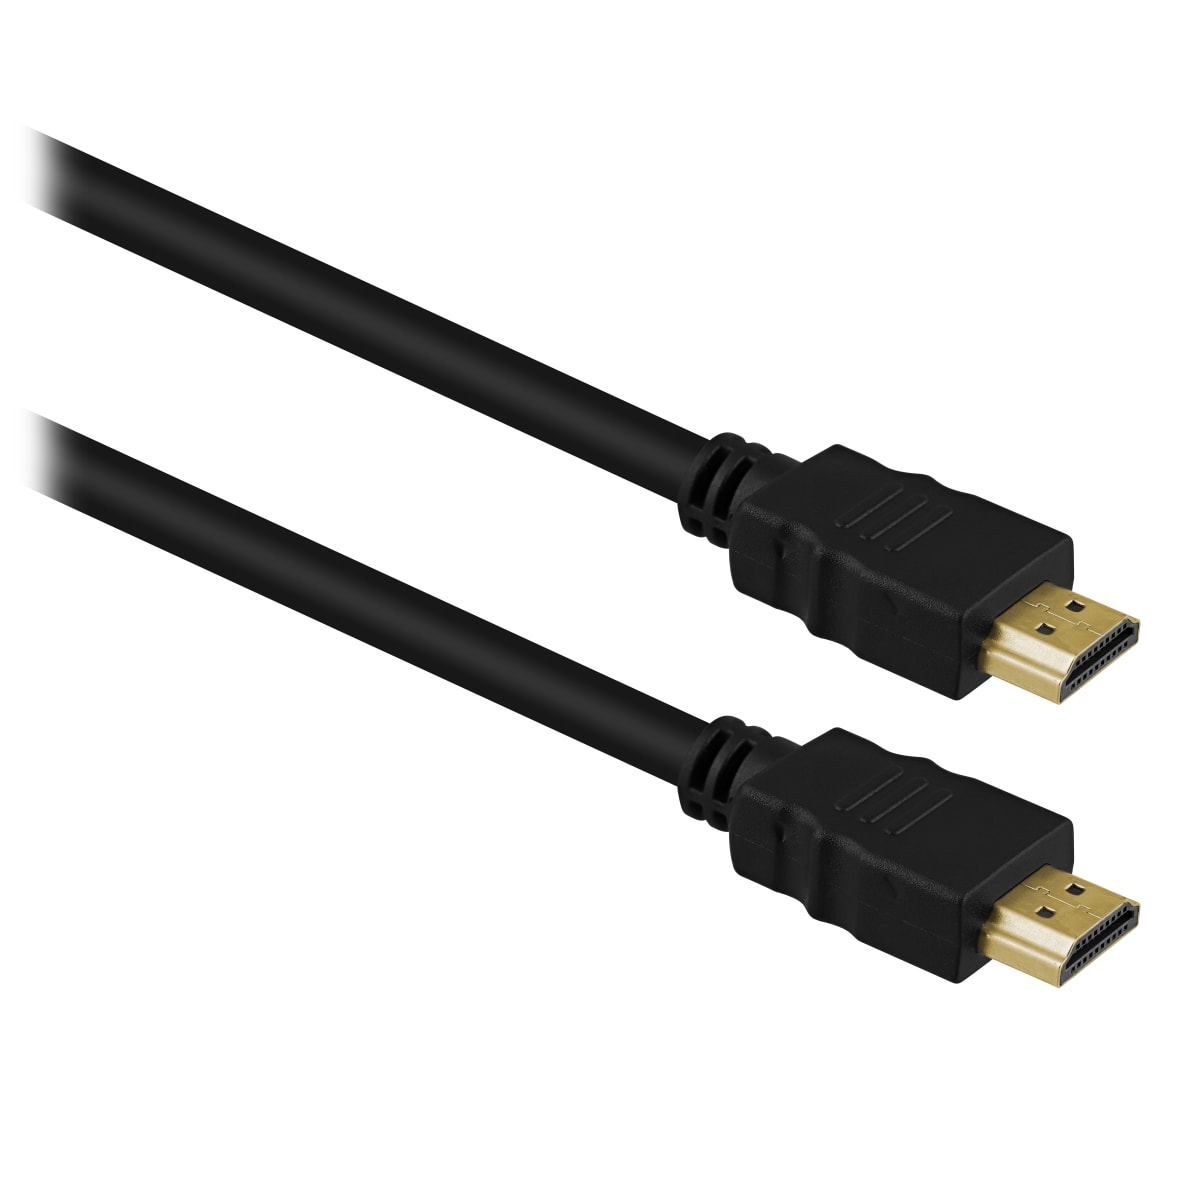 Male HDMI / male HDMI 2.0 cable 10m